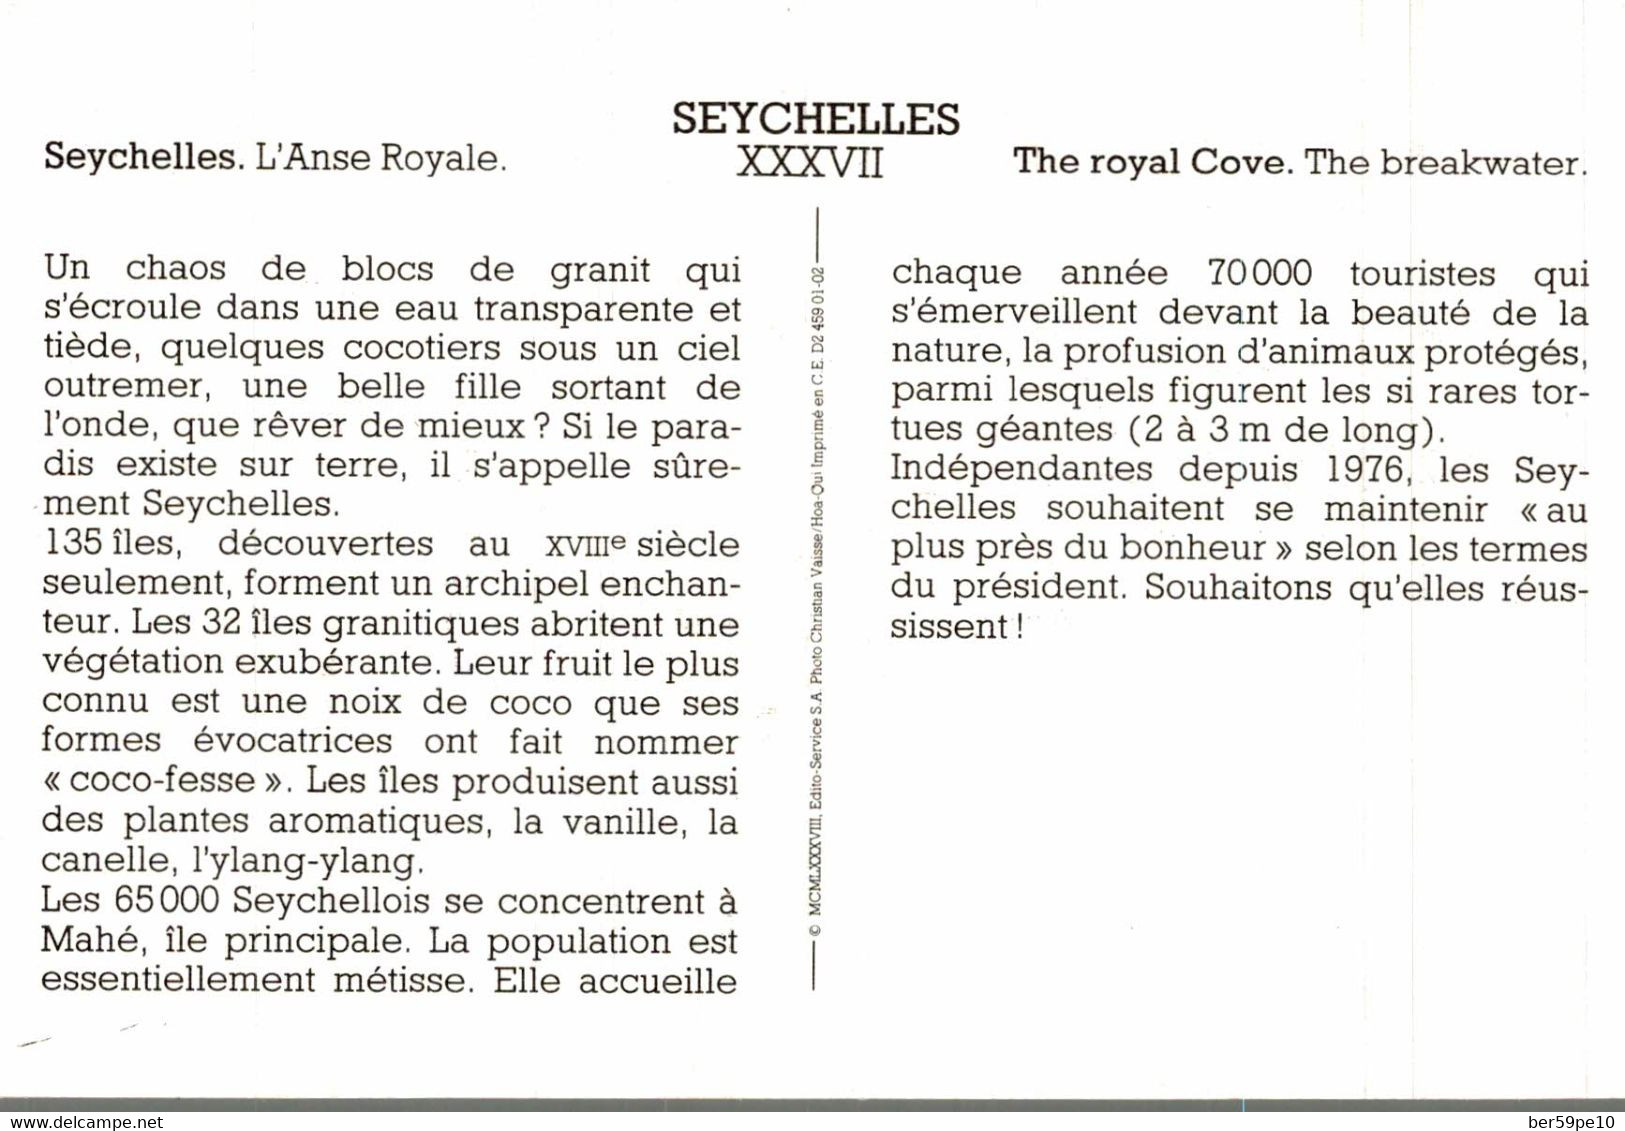 SEYCHELLES L'ANSE ROYALE / CARTE AVEC DESCRIPTIF AU DOS - Seychelles